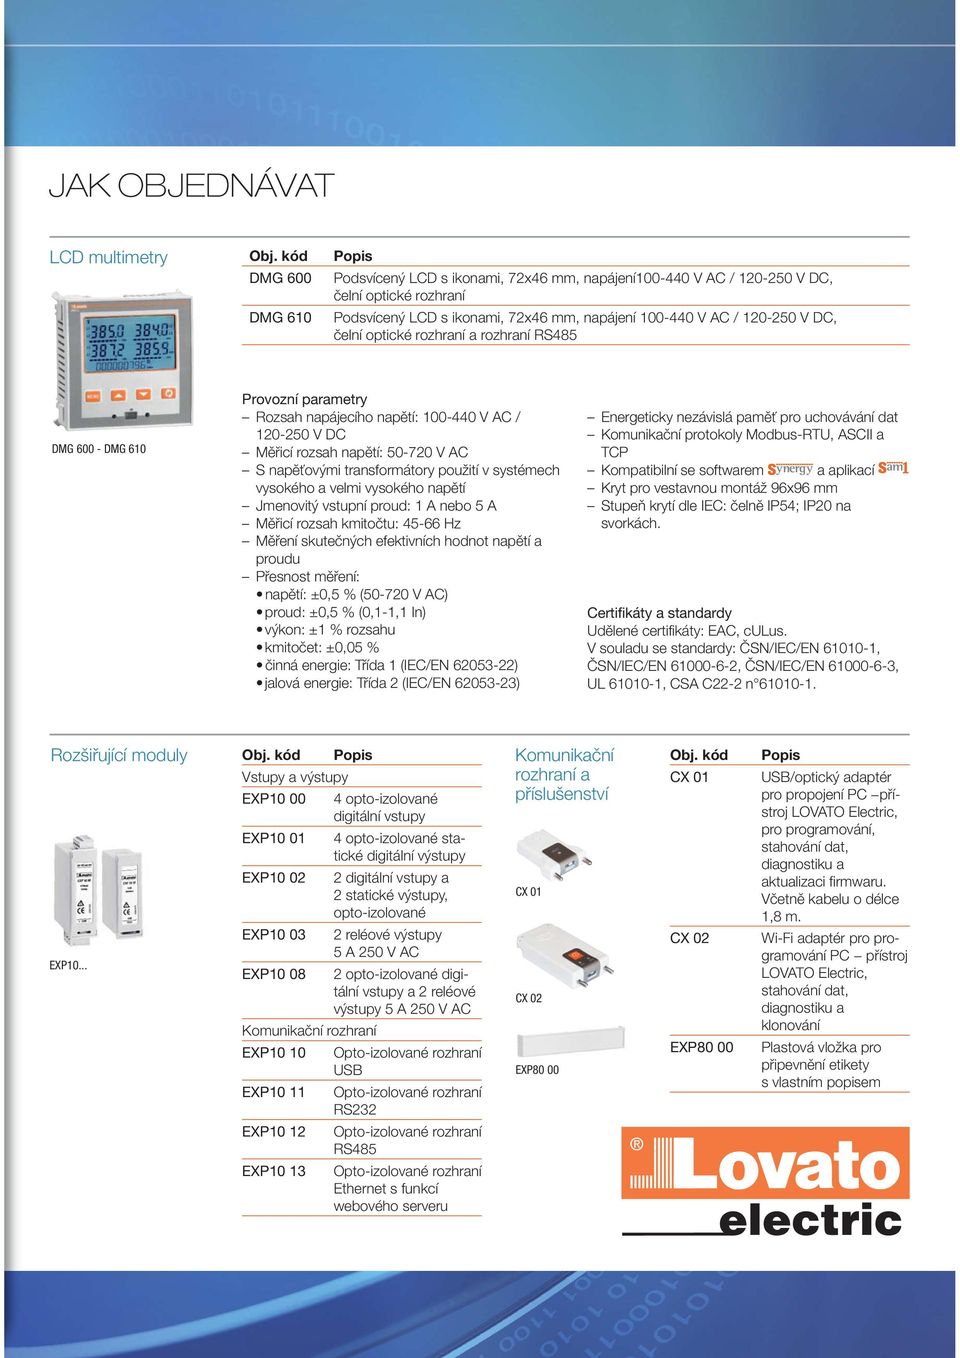 čelní optické rozhraní a rozhraní RS485 DMG 600 - DMG 610 Provozní parametry Rozsah napájecího napětí: 100-440 V AC / 120-250 V DC Měřicí rozsah napětí: 50-720 V AC S napěťovými transformátory